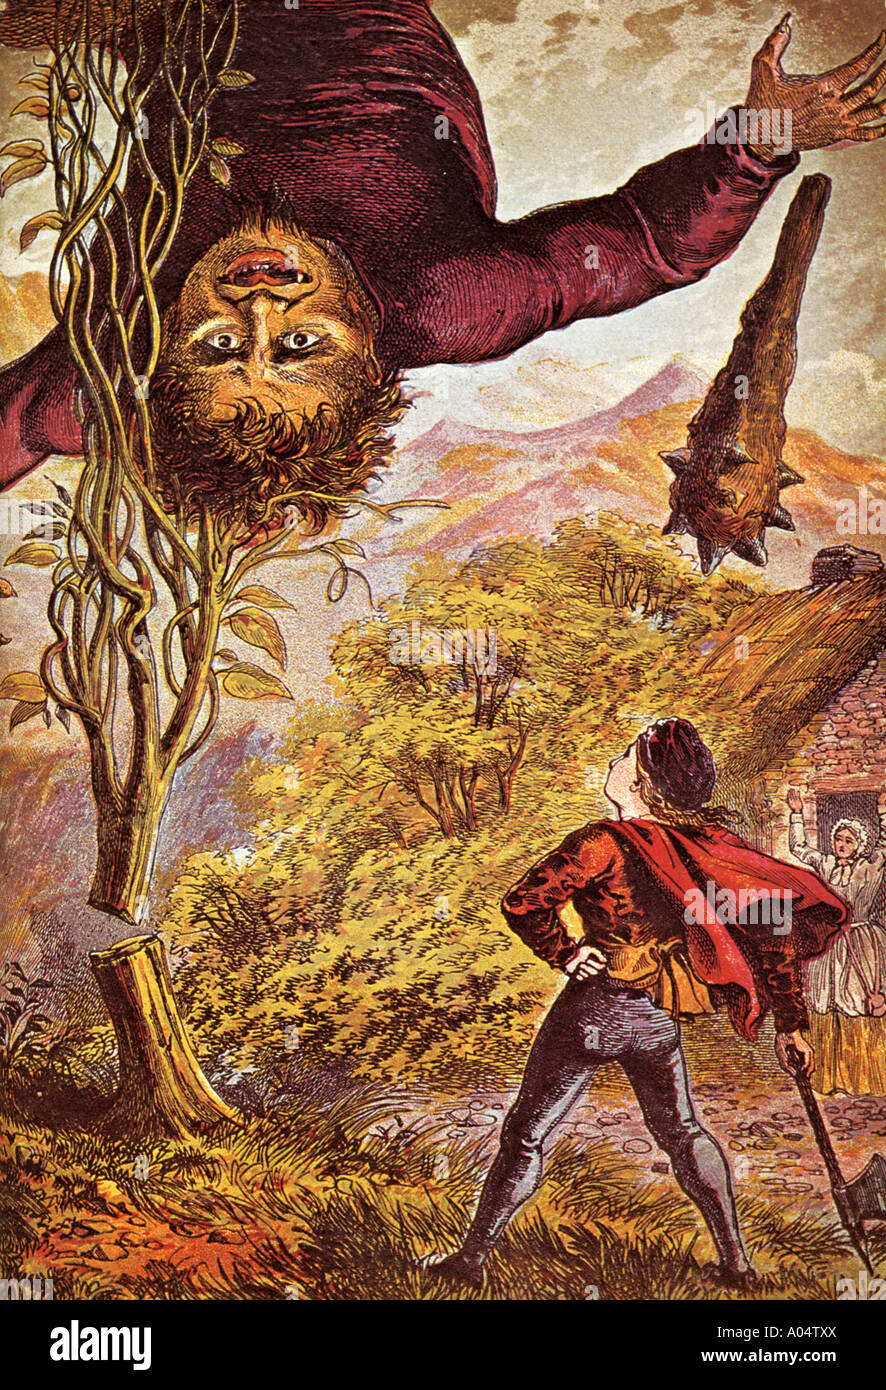 JACK et le haricot magique dans une illustration de livre de 1871 Banque D'Images